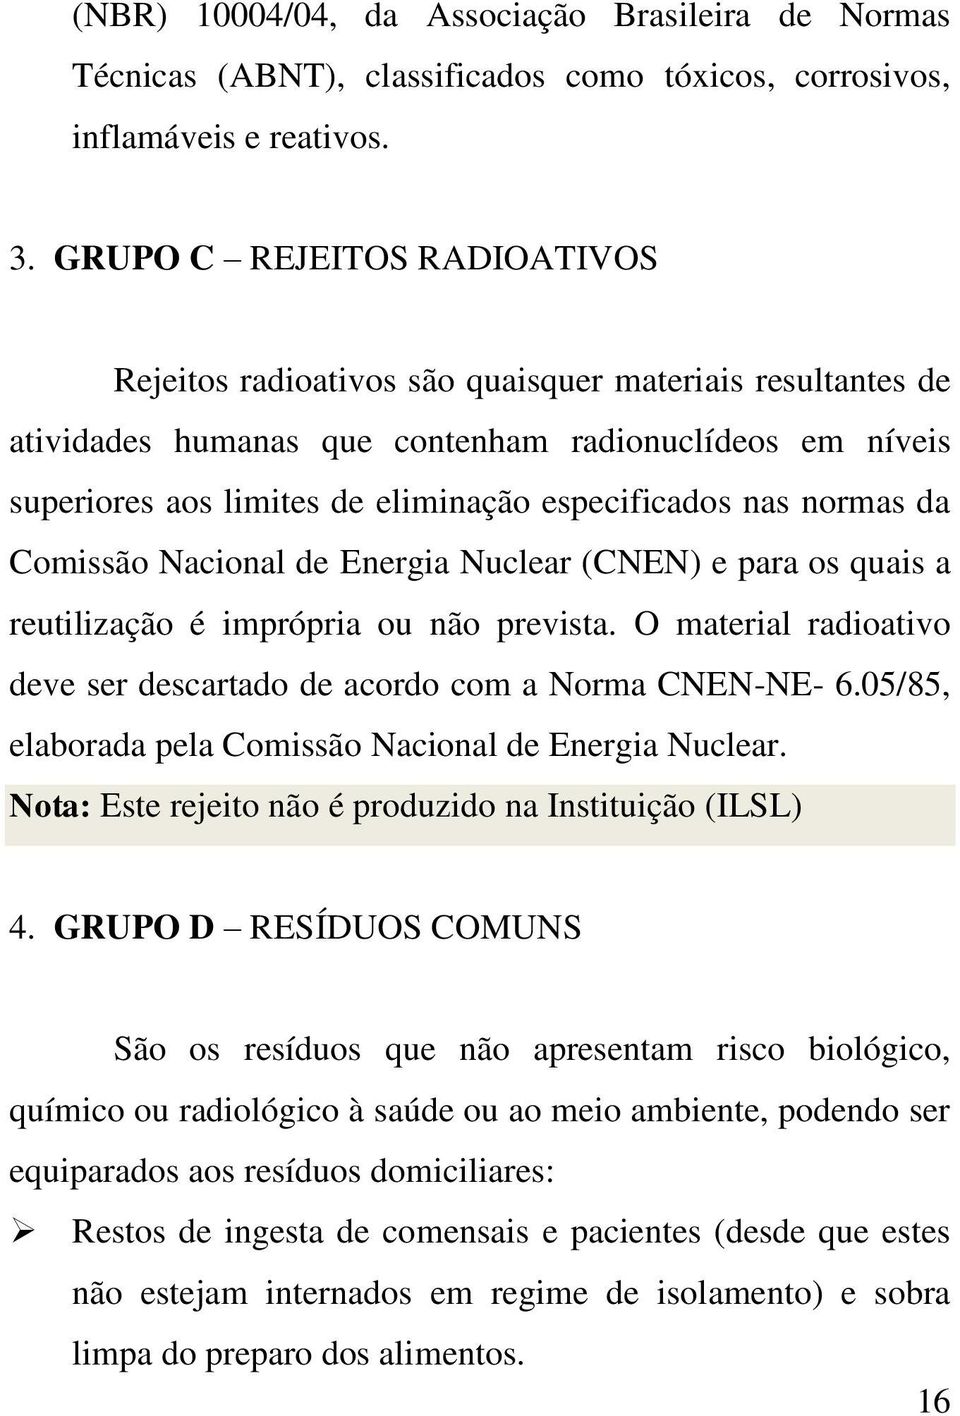 nas normas da Comissão Nacional de Energia Nuclear (CNEN) e para os quais a reutilização é imprópria ou não prevista. O material radioativo deve ser descartado de acordo com a Norma CNEN-NE- 6.